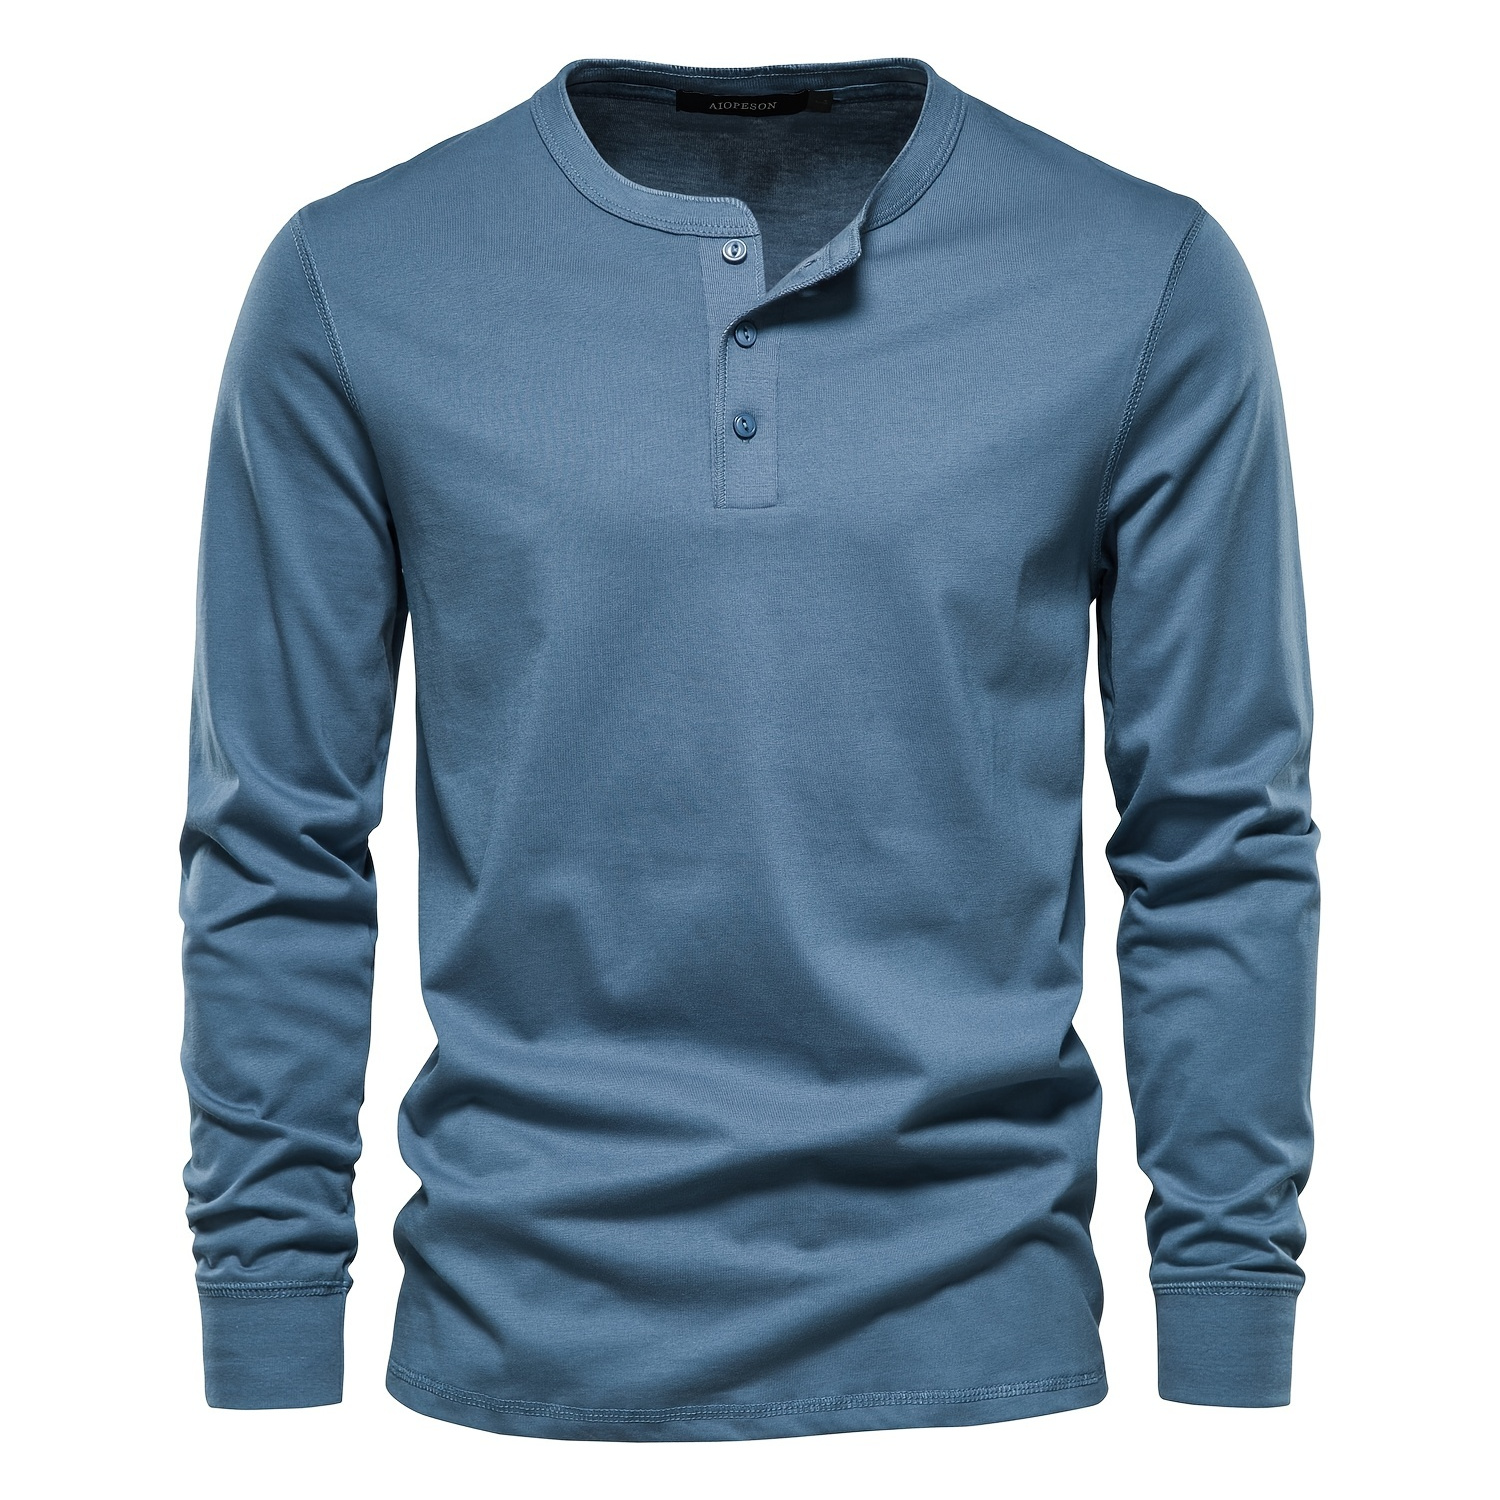 CALVIN KLEIN Henley Shirt Long Sleeve Scoop Neck 3 Buttons. Size